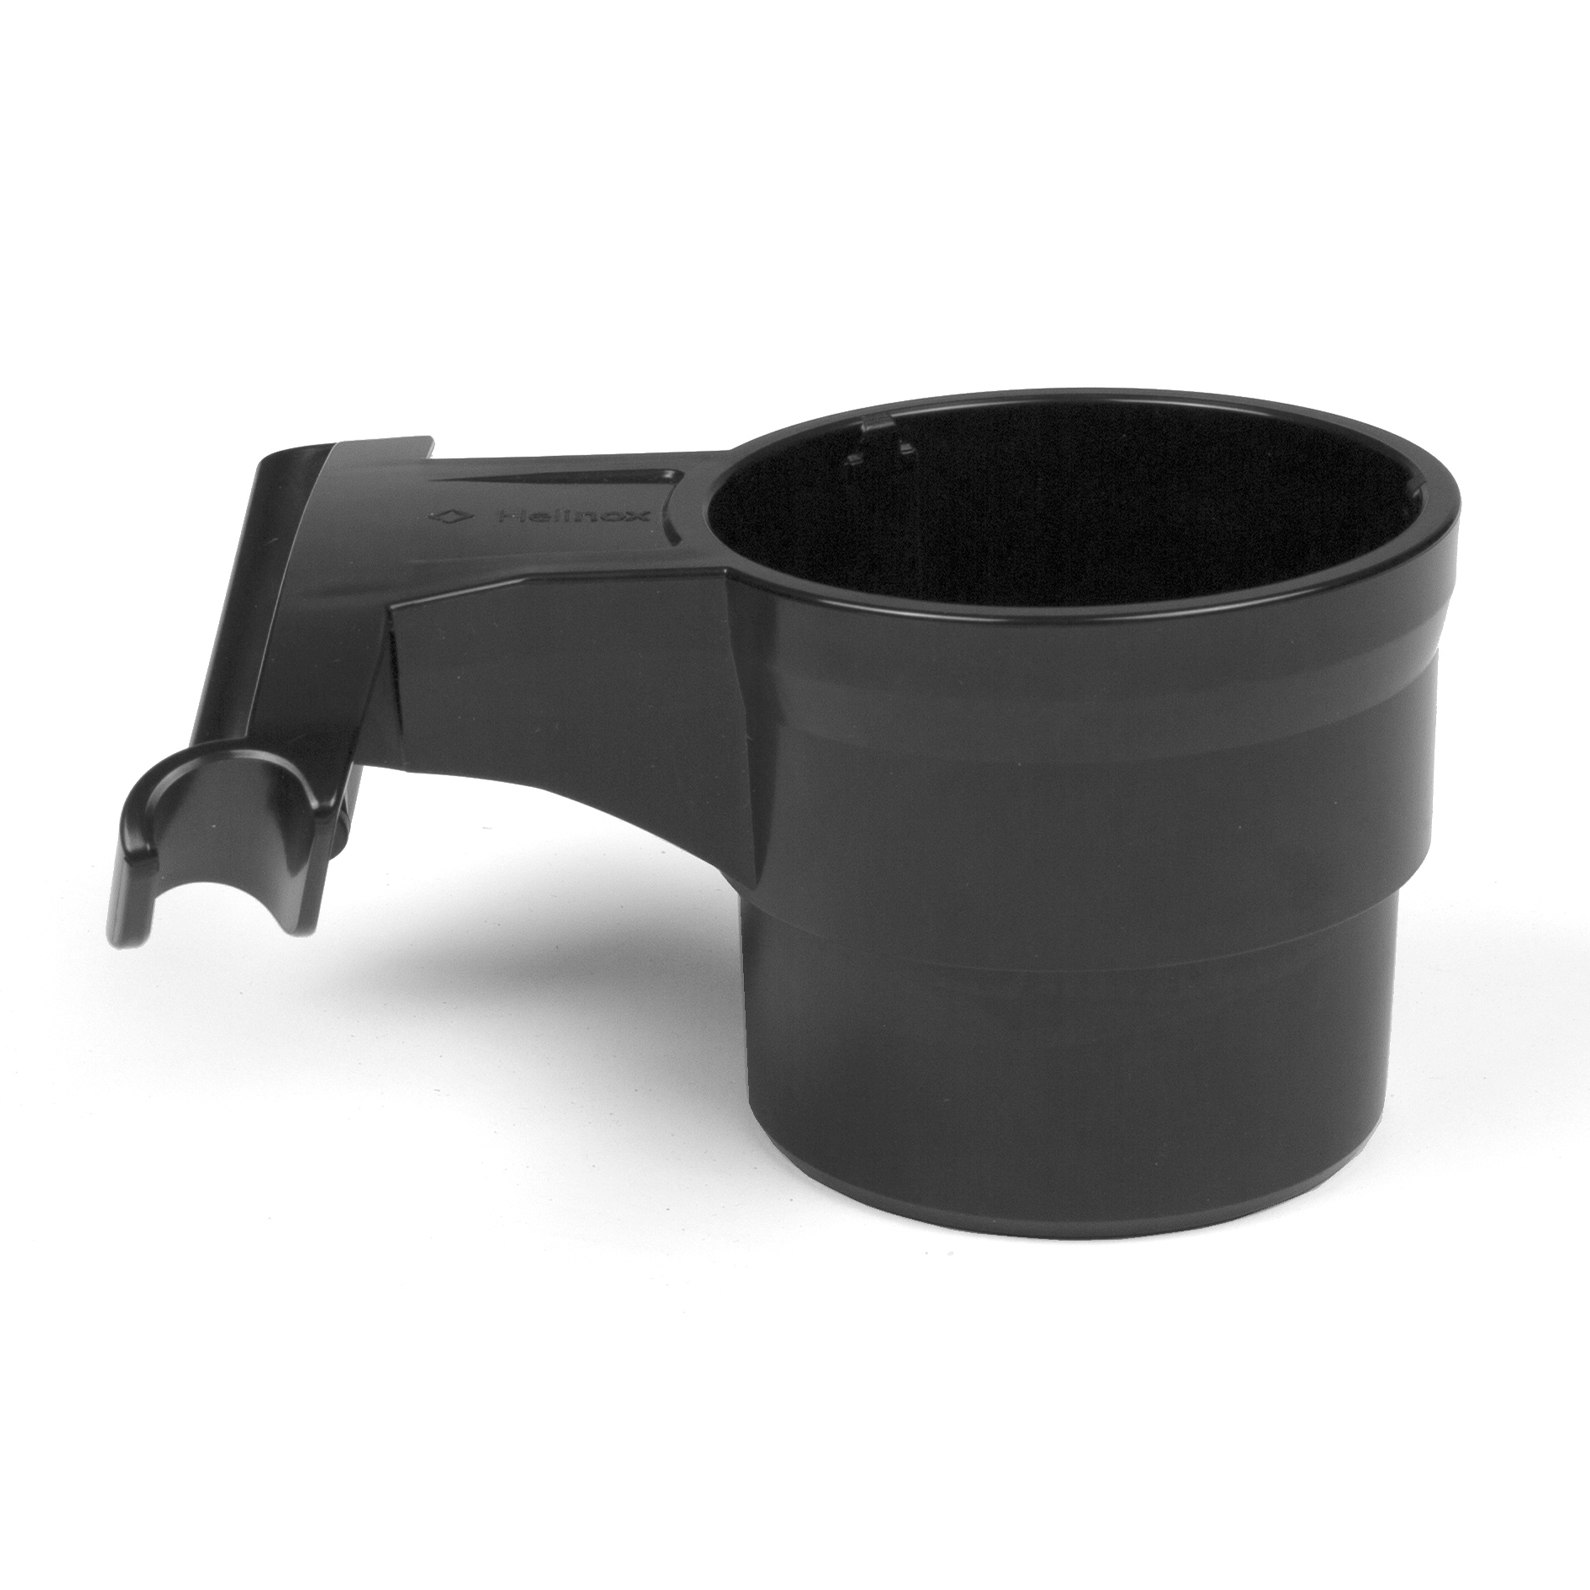 Produktbild von Helinox Cup Holder - Getränkehalter Plastik